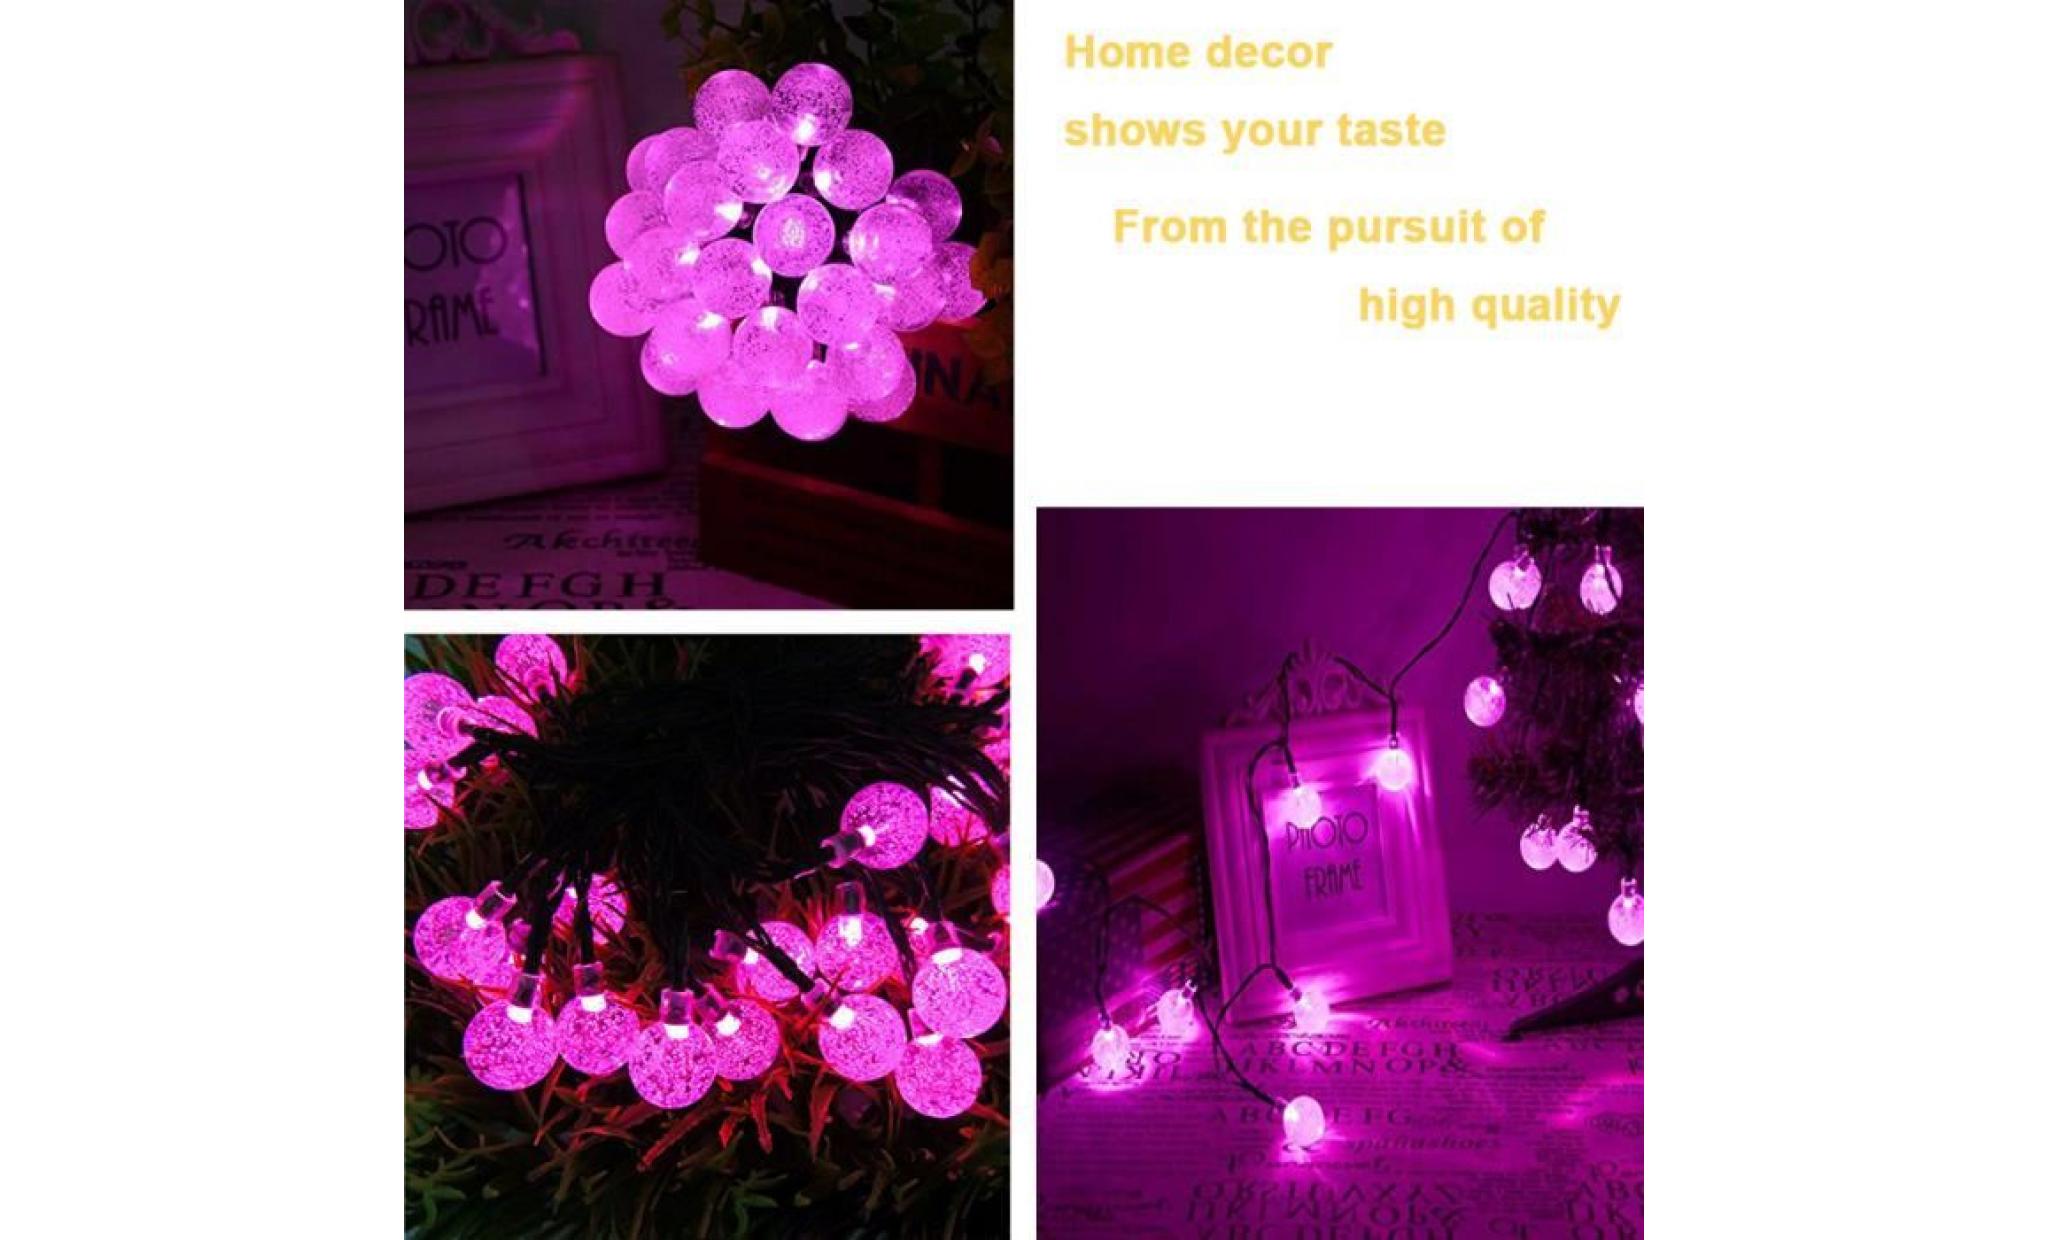 Énergie solaire 30 jardin guirlande led lumière chemin de jardin décor festival en plein air violet li674685 pas cher